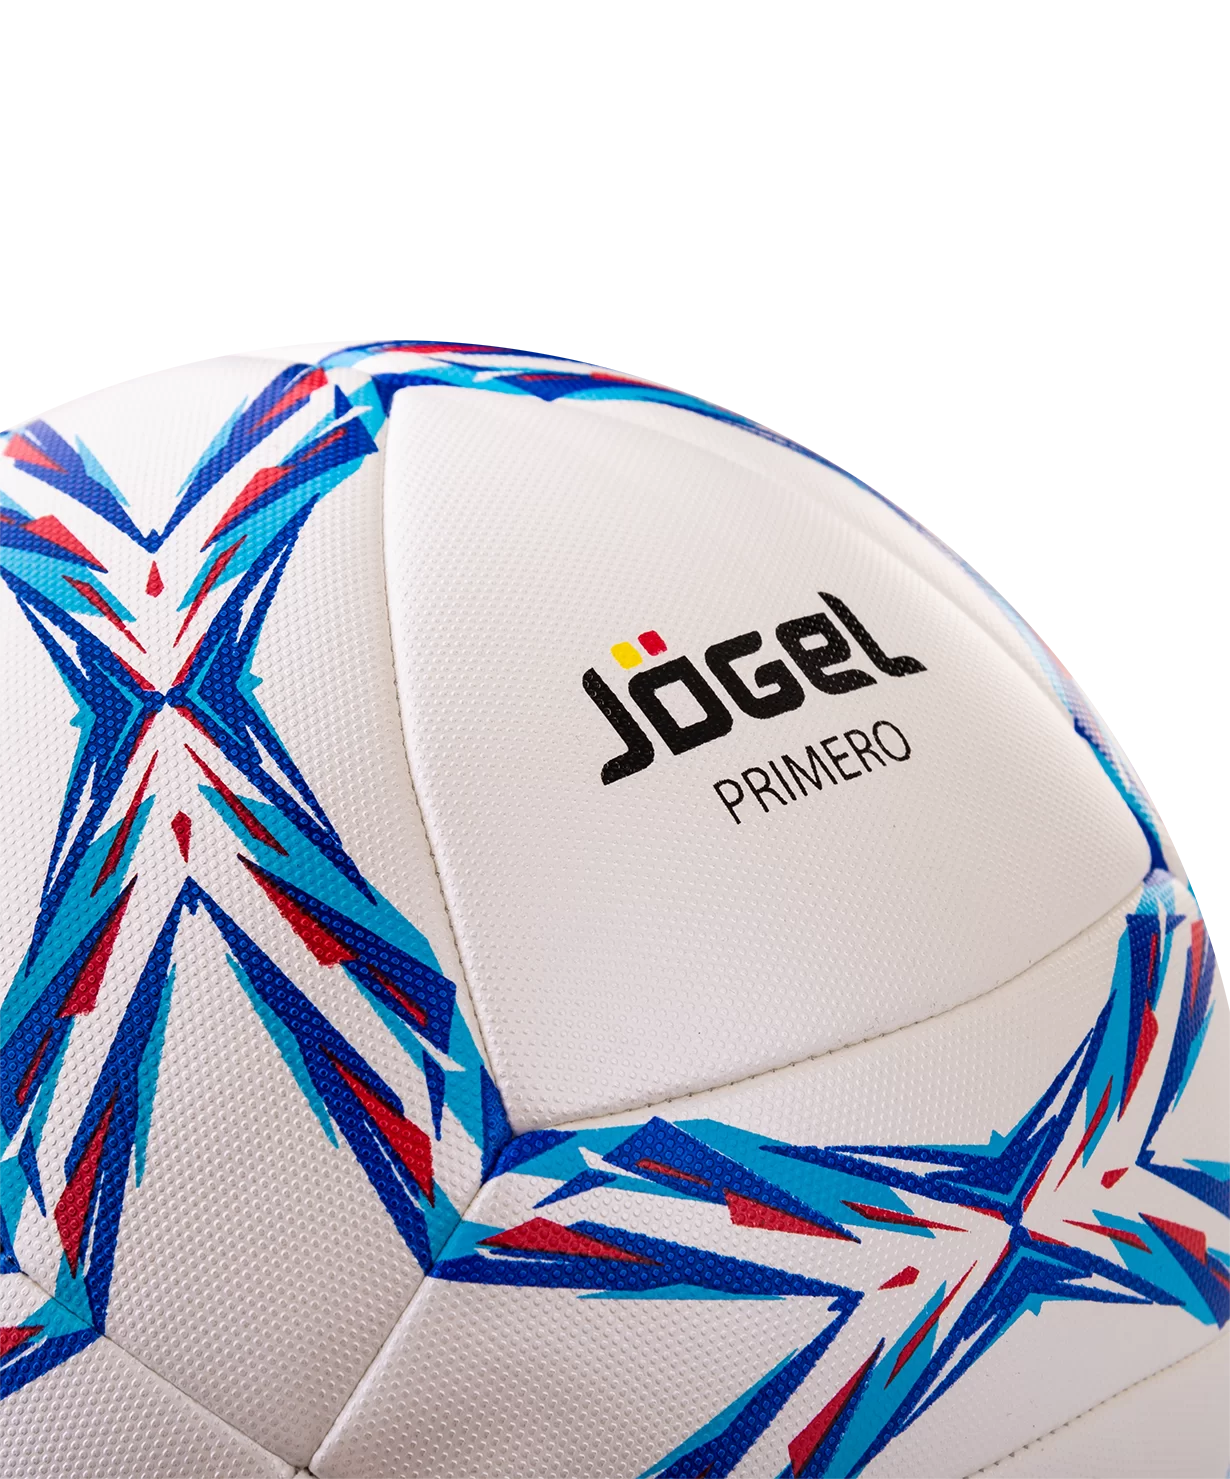 Реальное фото Мяч футбольный Jogel JS-910 Primero №5  12417 от магазина СпортСЕ